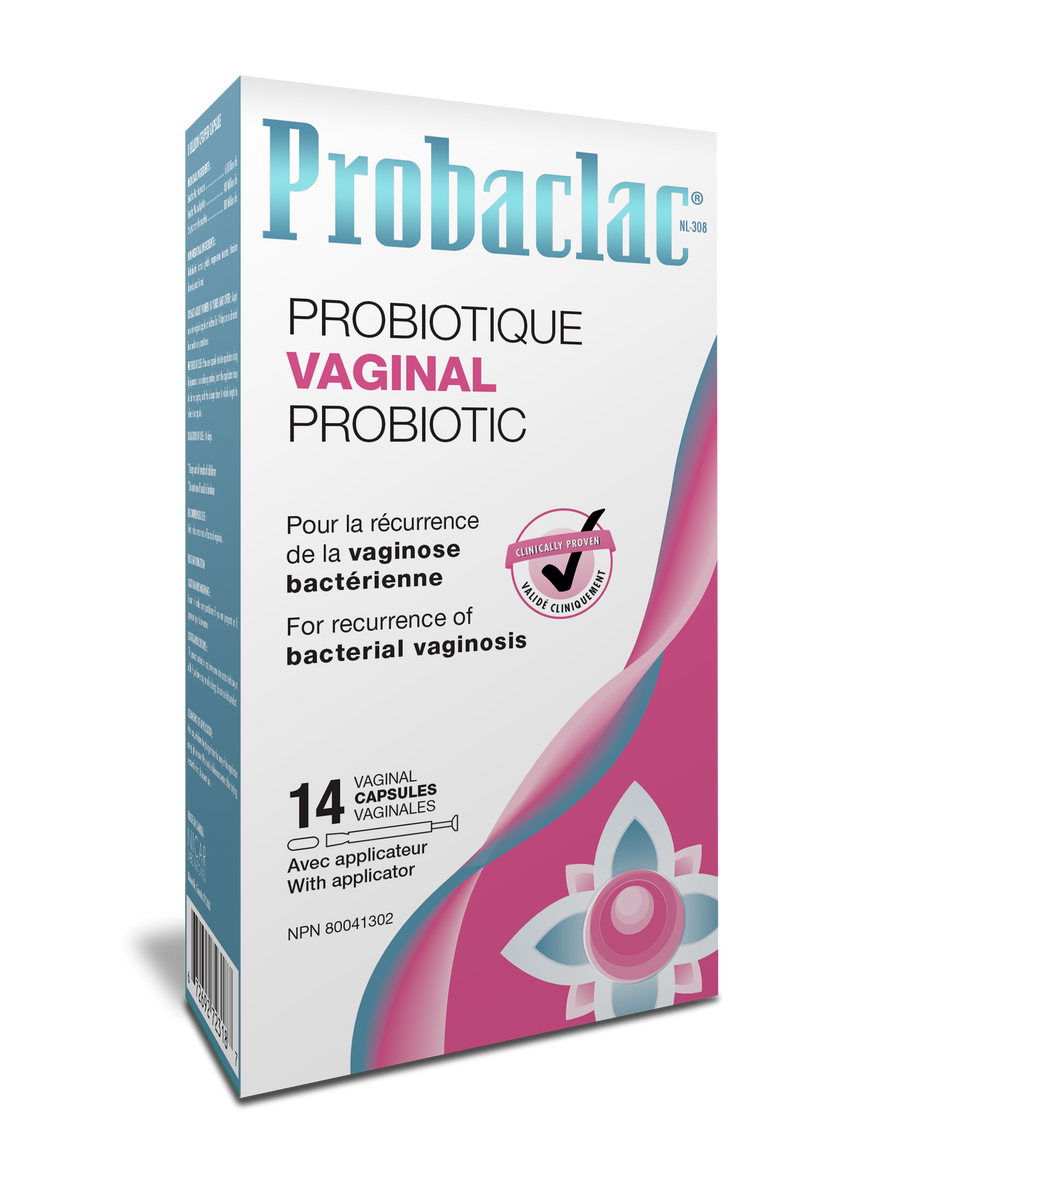 Probaclac Vaginal - Bacterial vaginosis probiotics